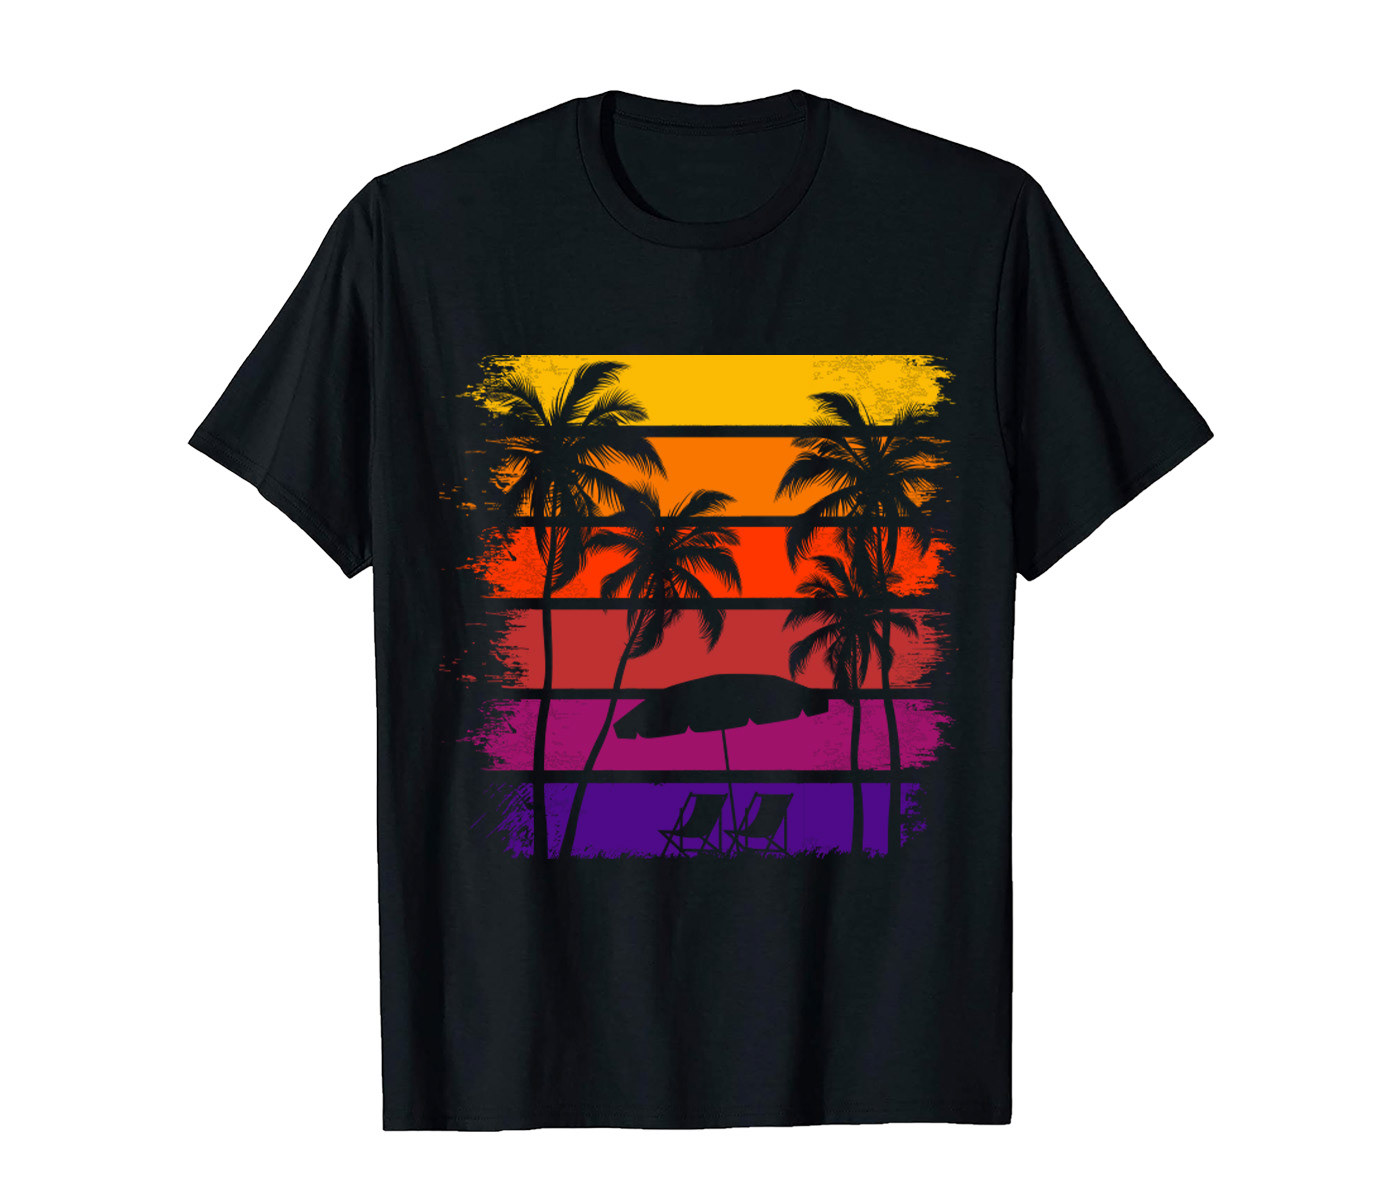 Summer T-shirt design Summer T-Shirt Vacation T-Shirt vintage t-shirt T-Shirt Design surfing t-shirt UNIQUE T-SHIRT DESIGN modern t-shirt sunshine t-shirt weekend t-shirt